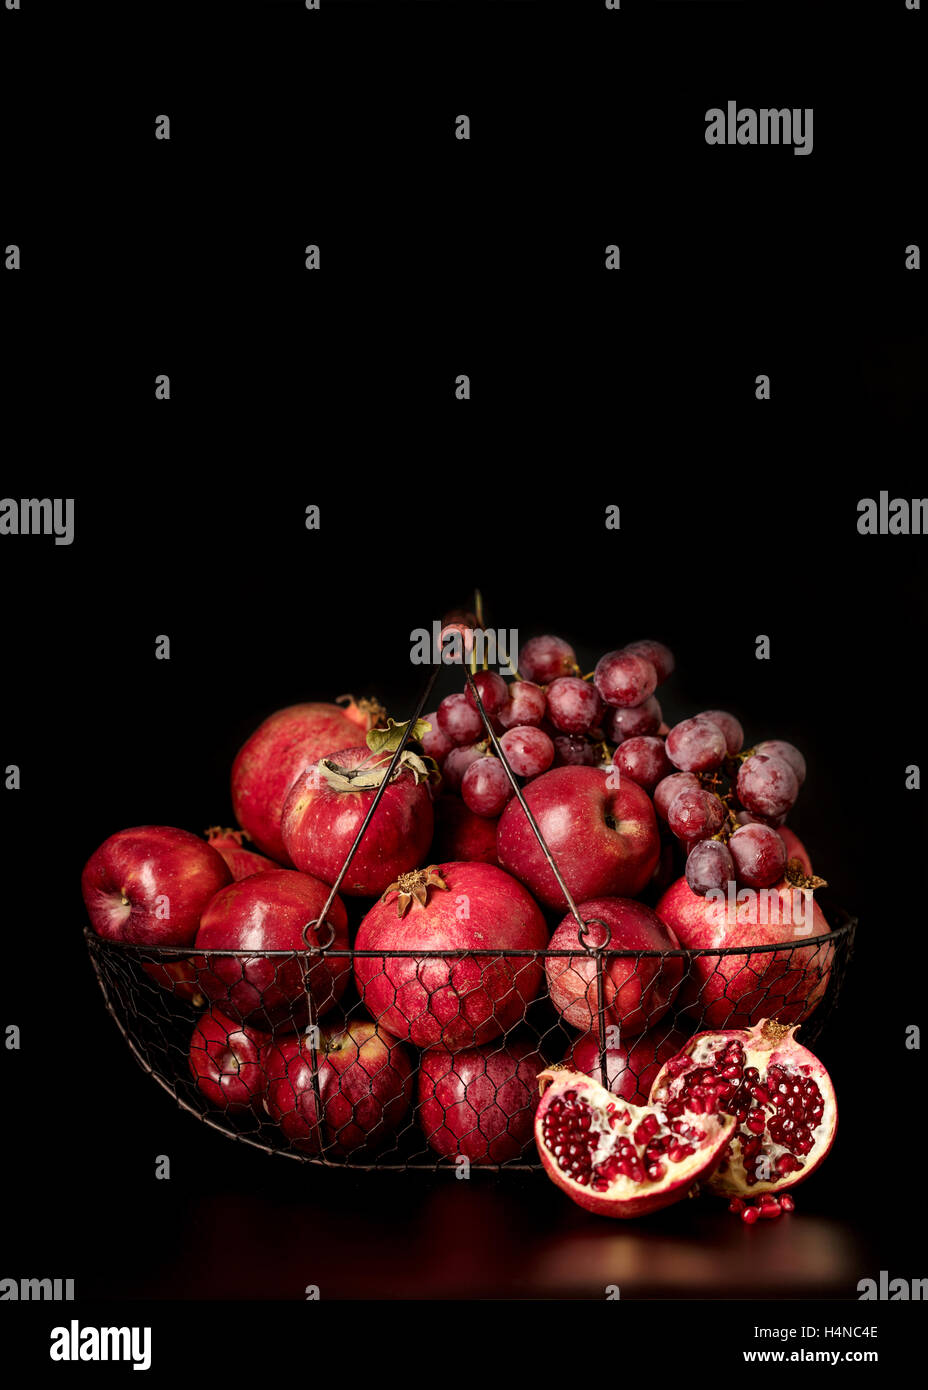 Nature morte sur un fond sombre. Fruits et petits fruits (pommes, raisins et grenades) dans le panier. Banque D'Images